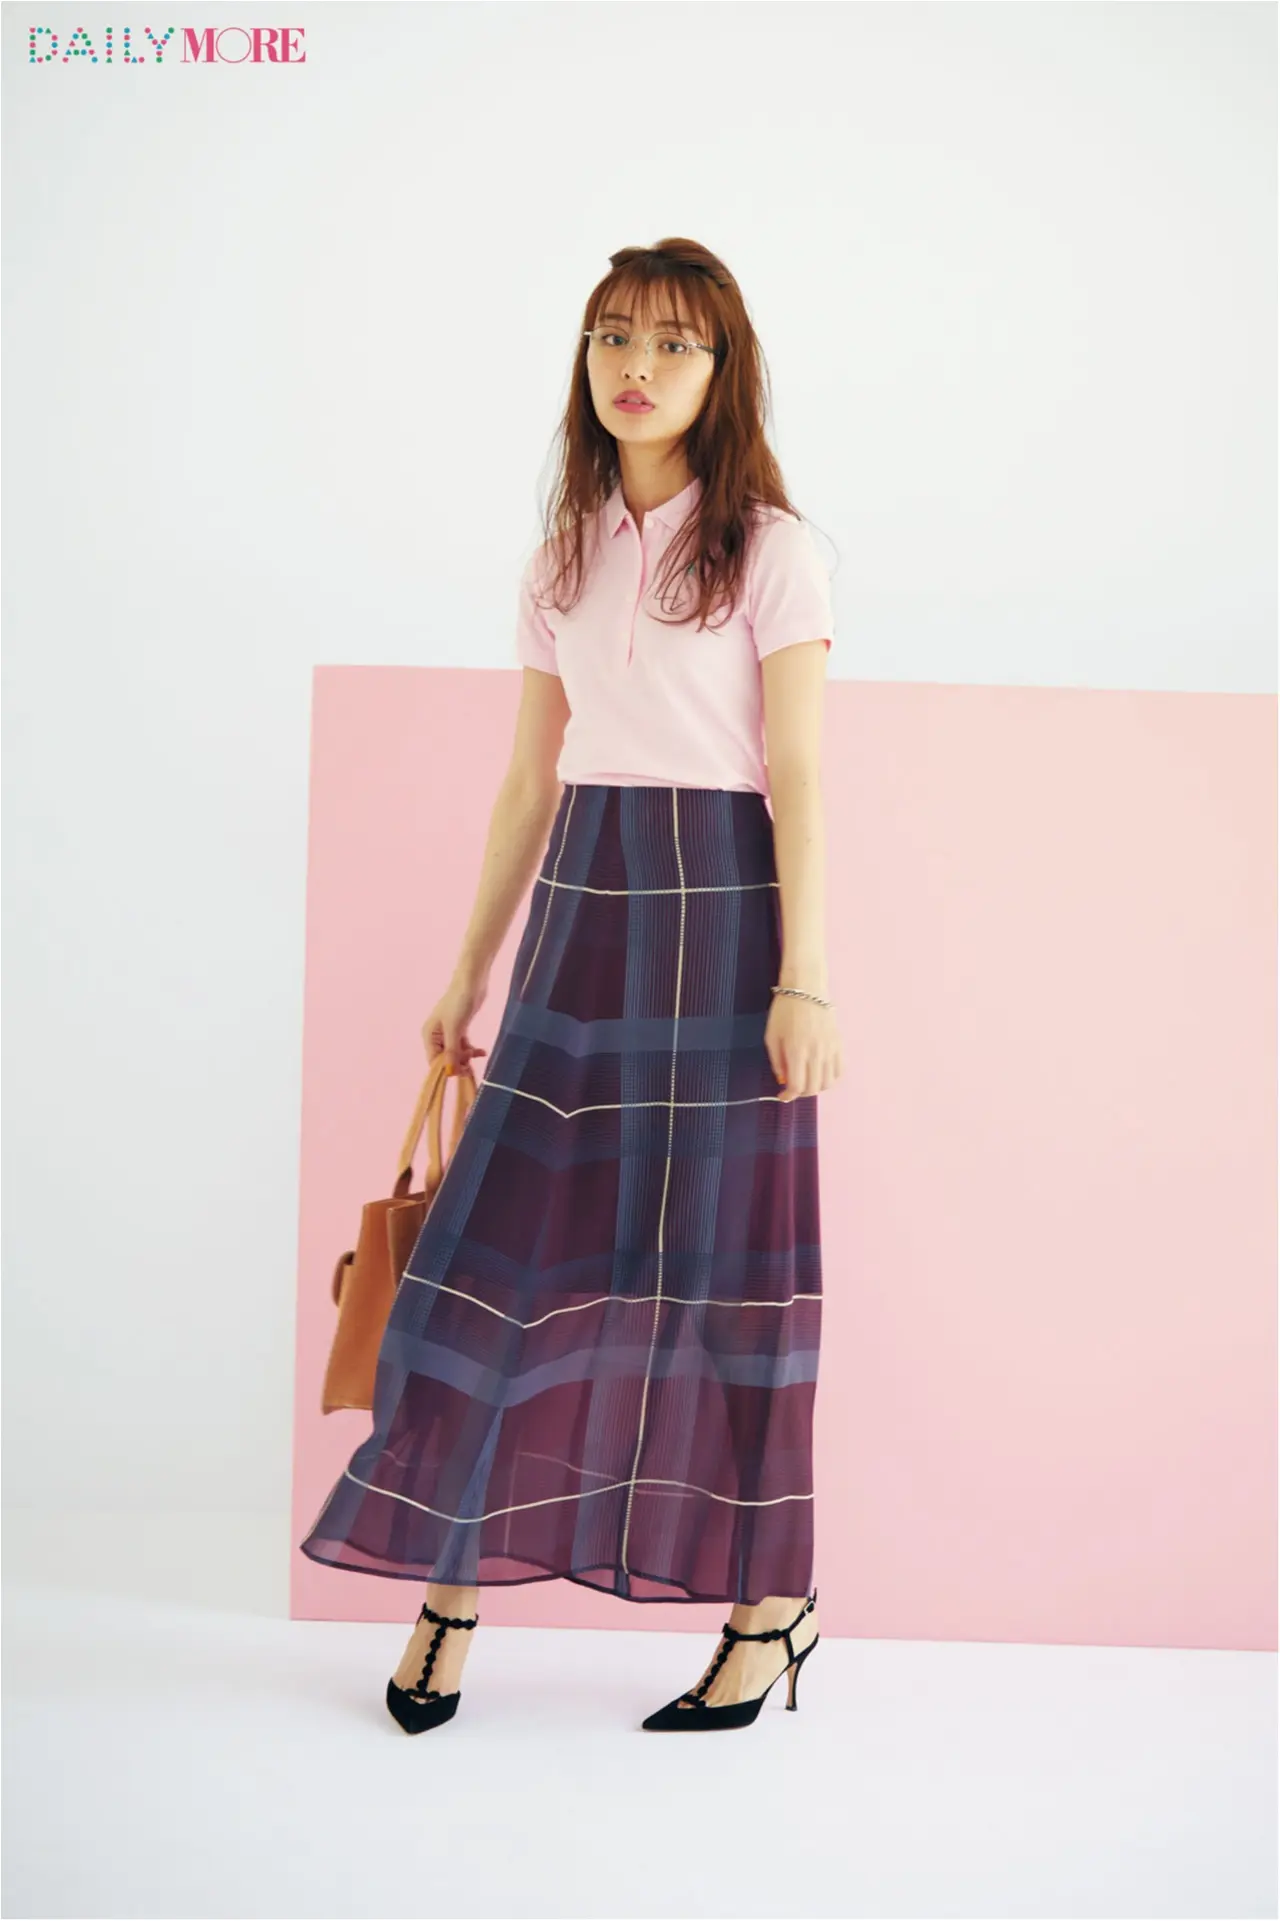 今日のコーデ 内田理央 この夏着たいピンクのポロシャツ マキシスカートでモテを意識して ファッション コーディネート 代 Daily More